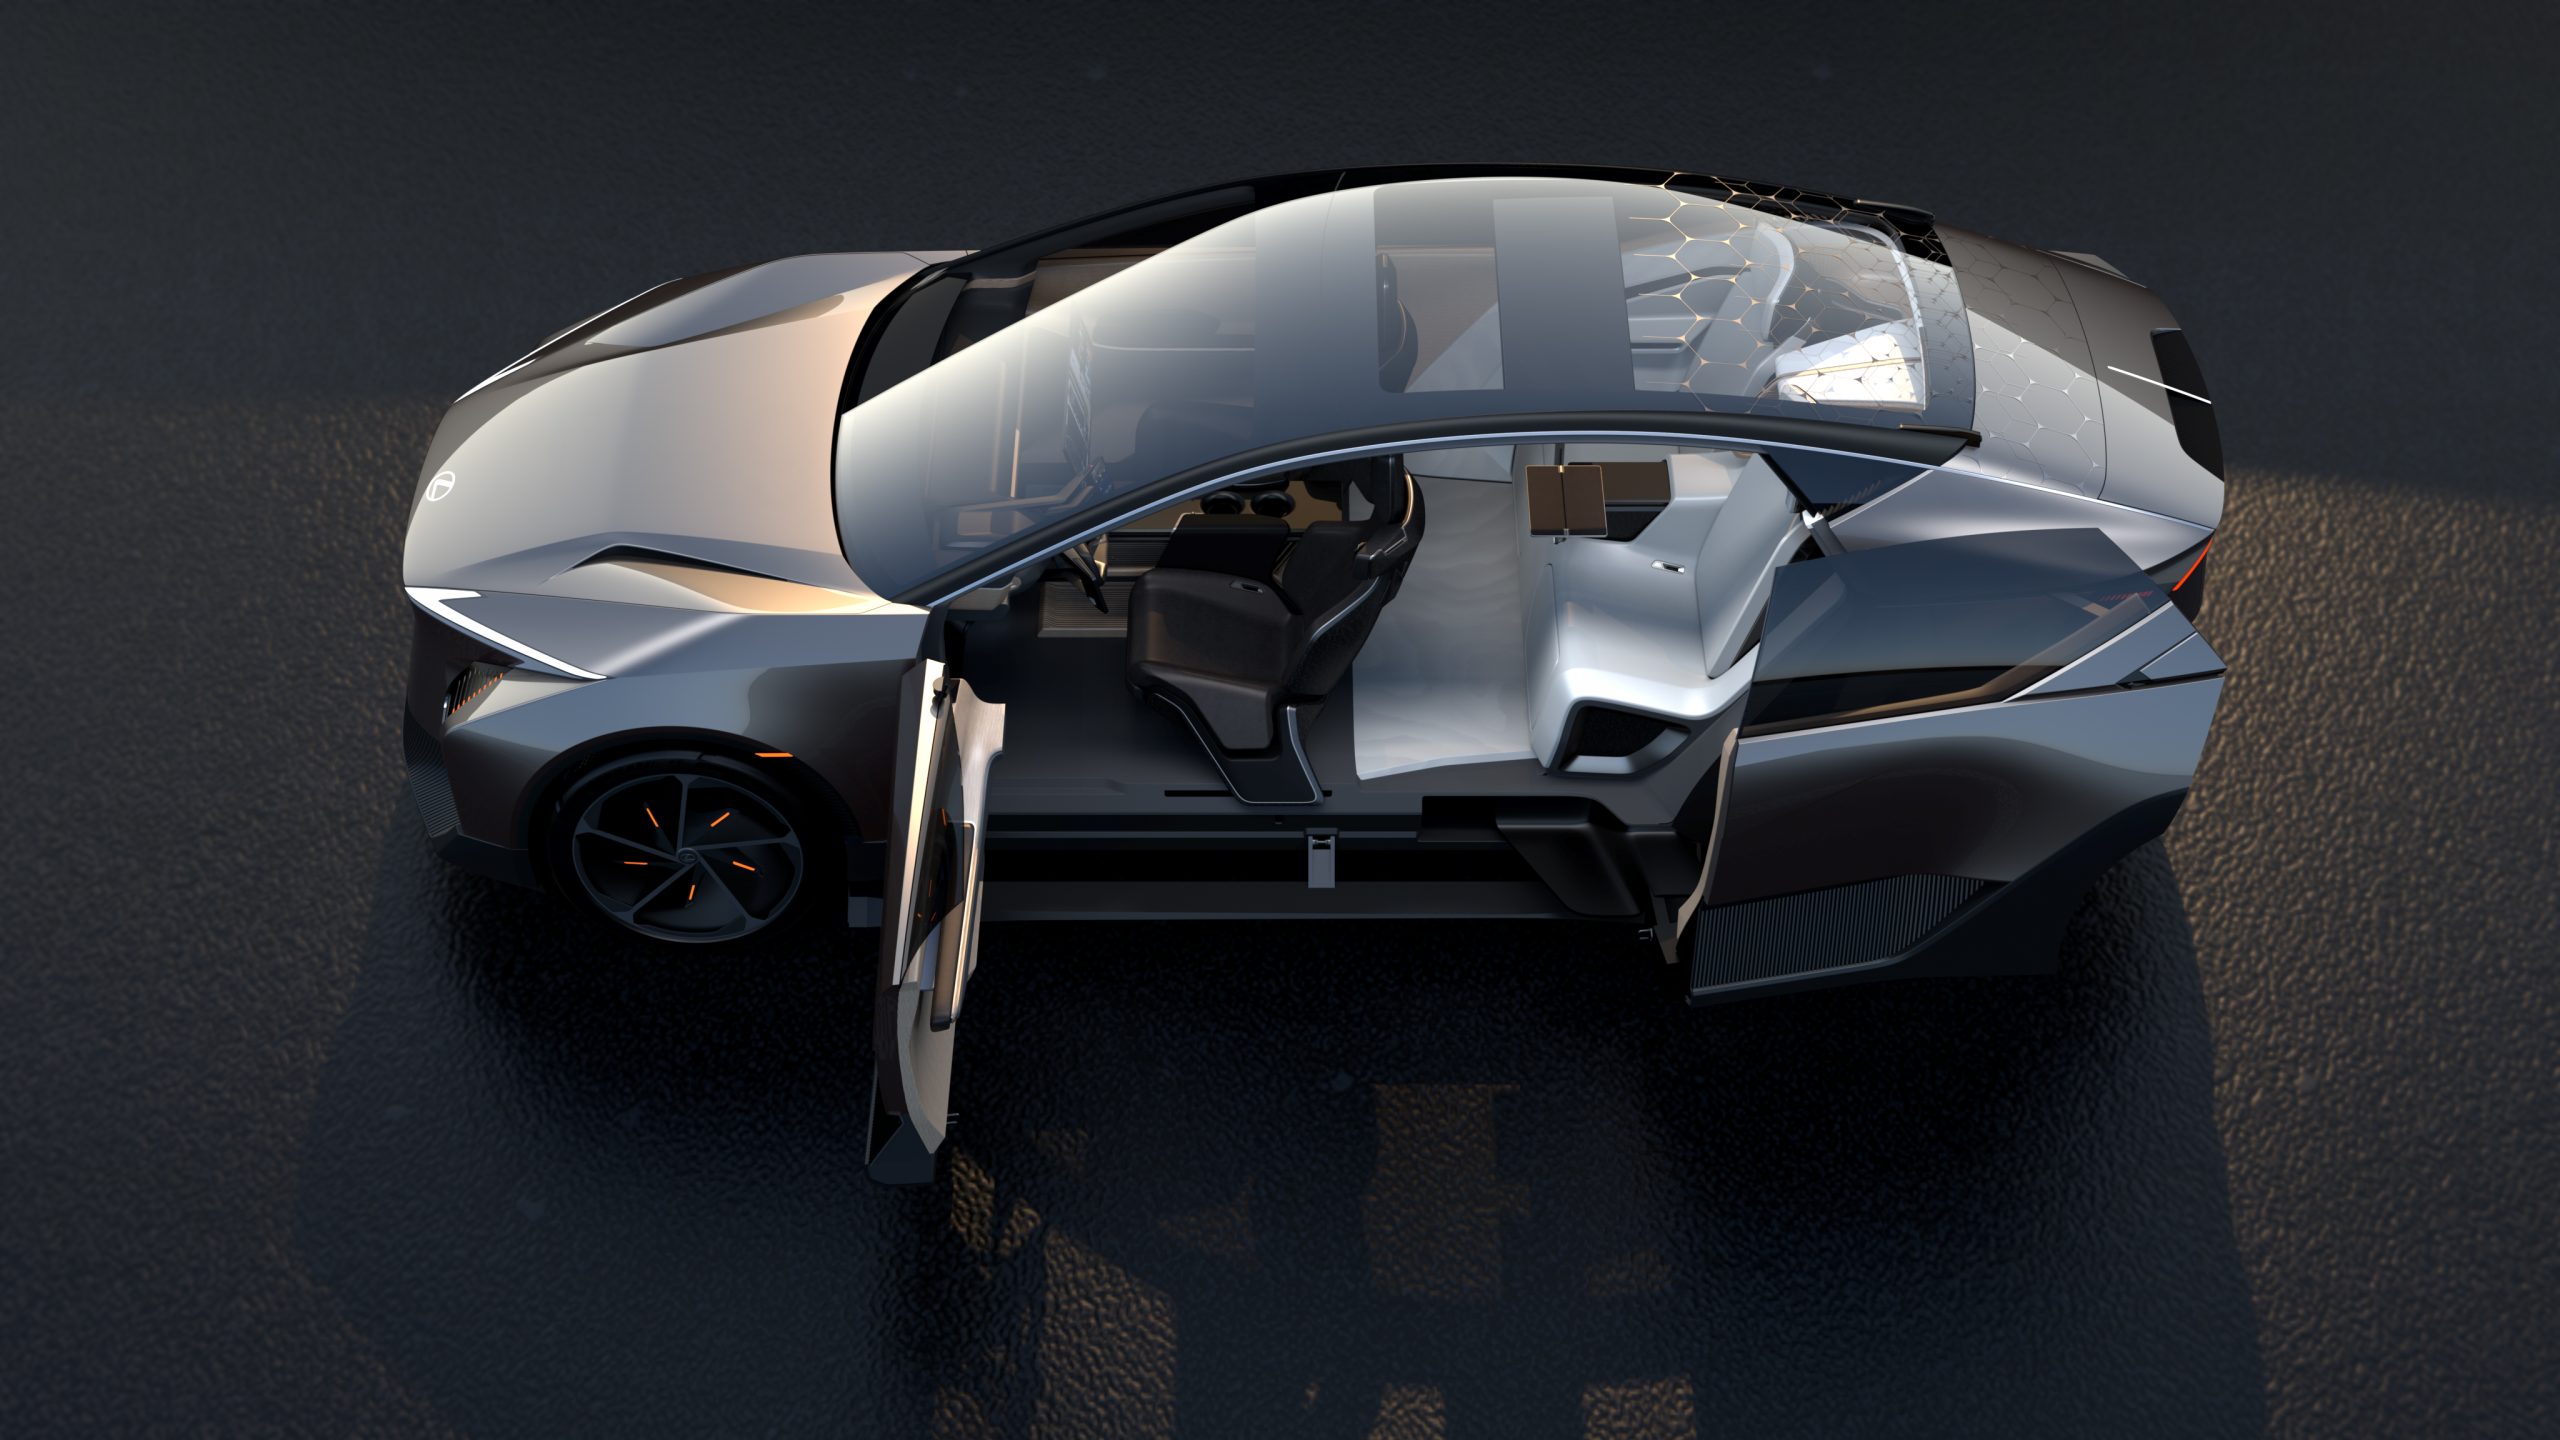 lexus unveils next-generation battery electric concept models